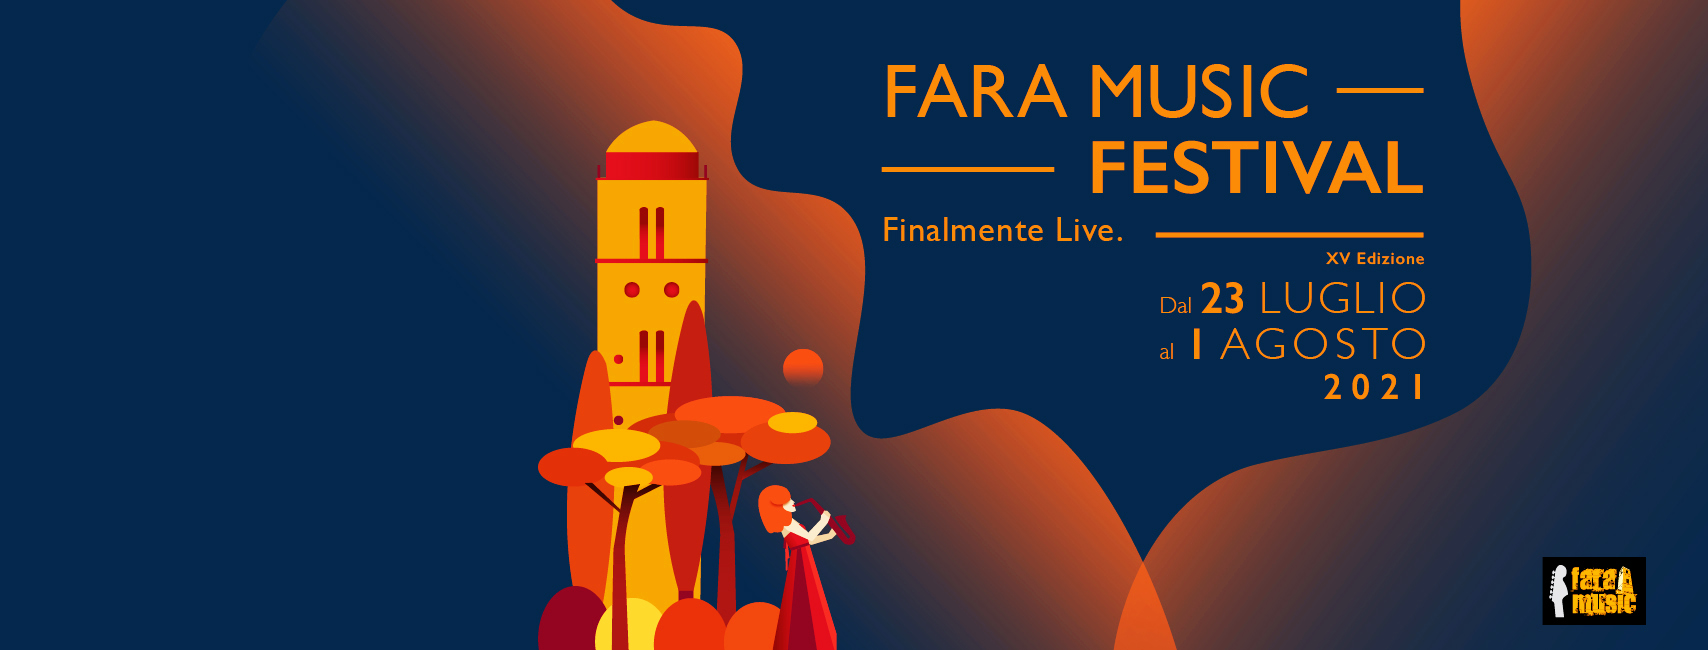 Fara Music 2021 #finalmentelive